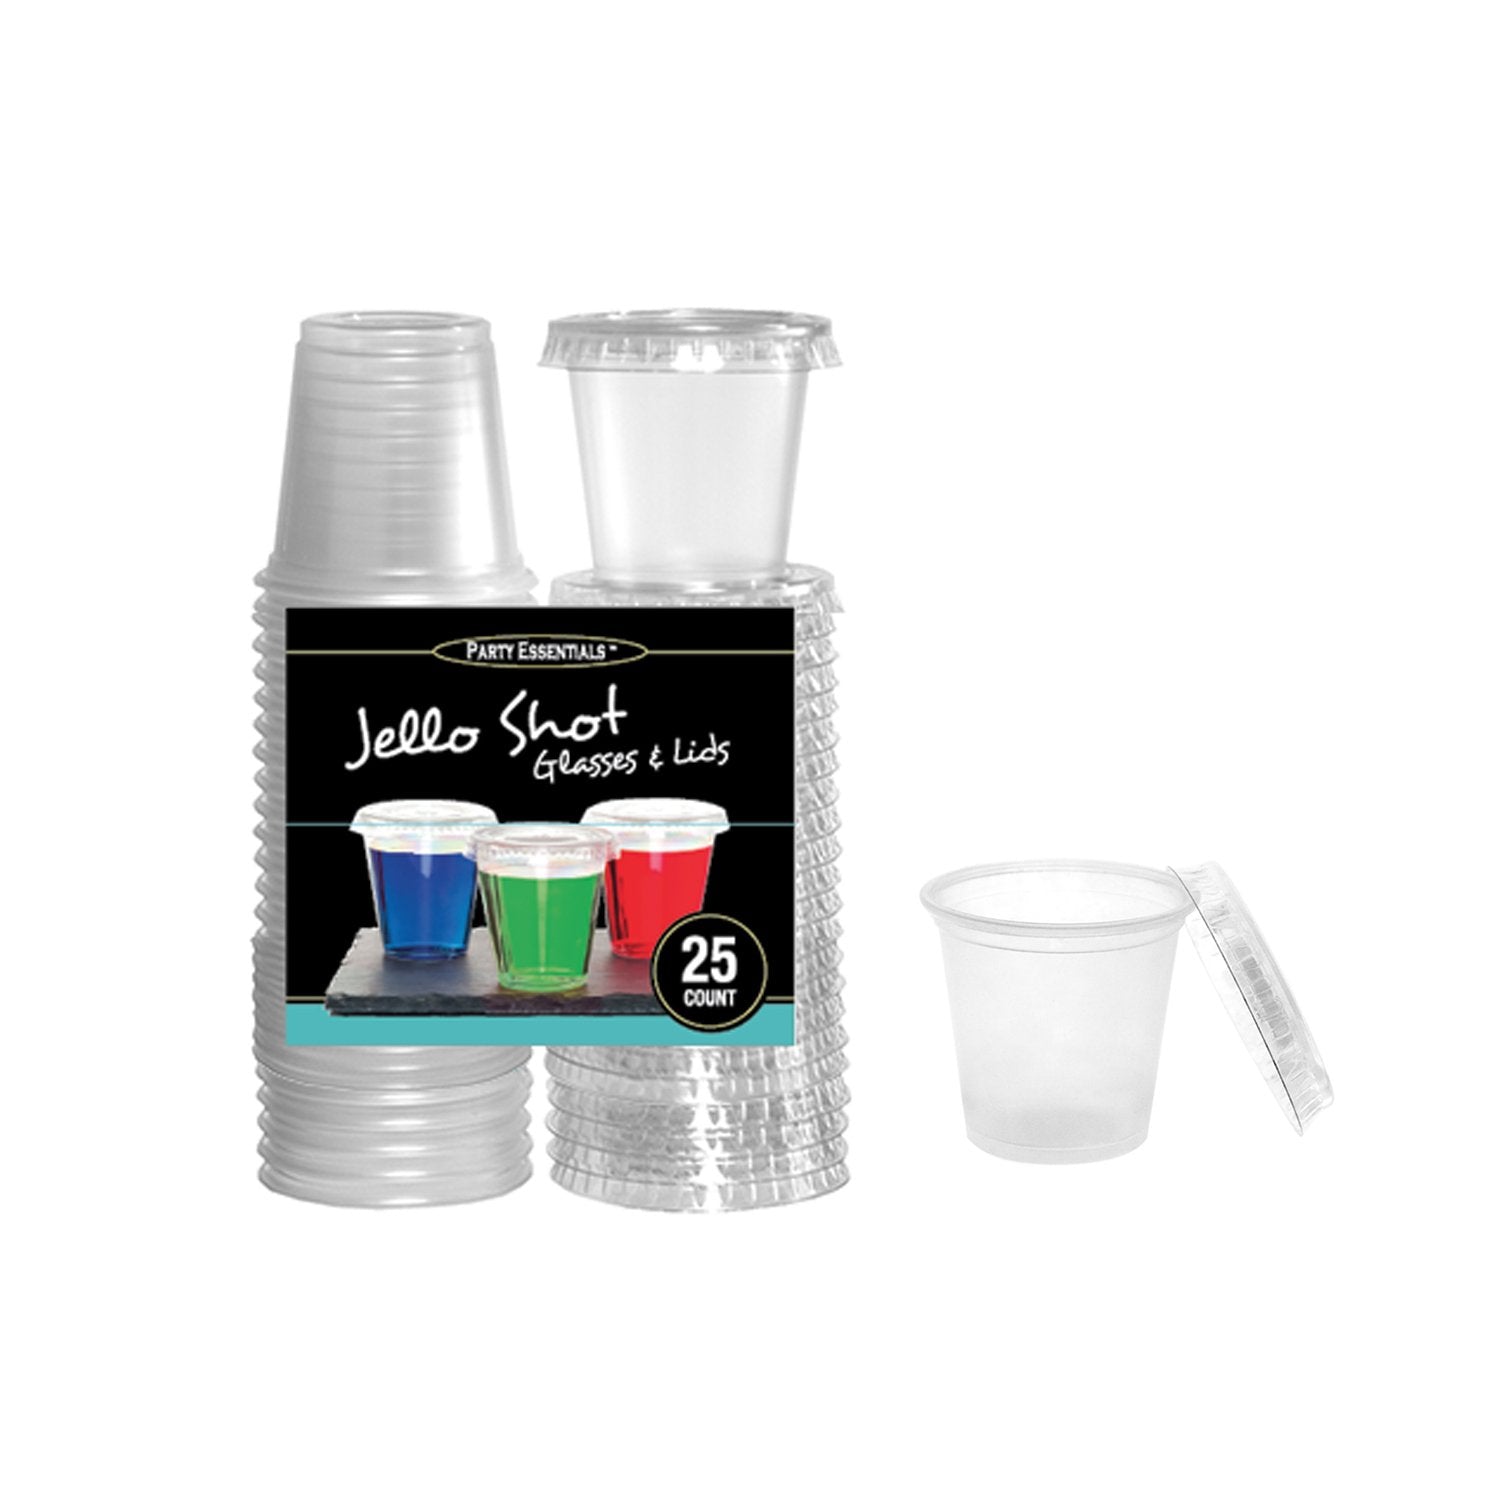 jello cup